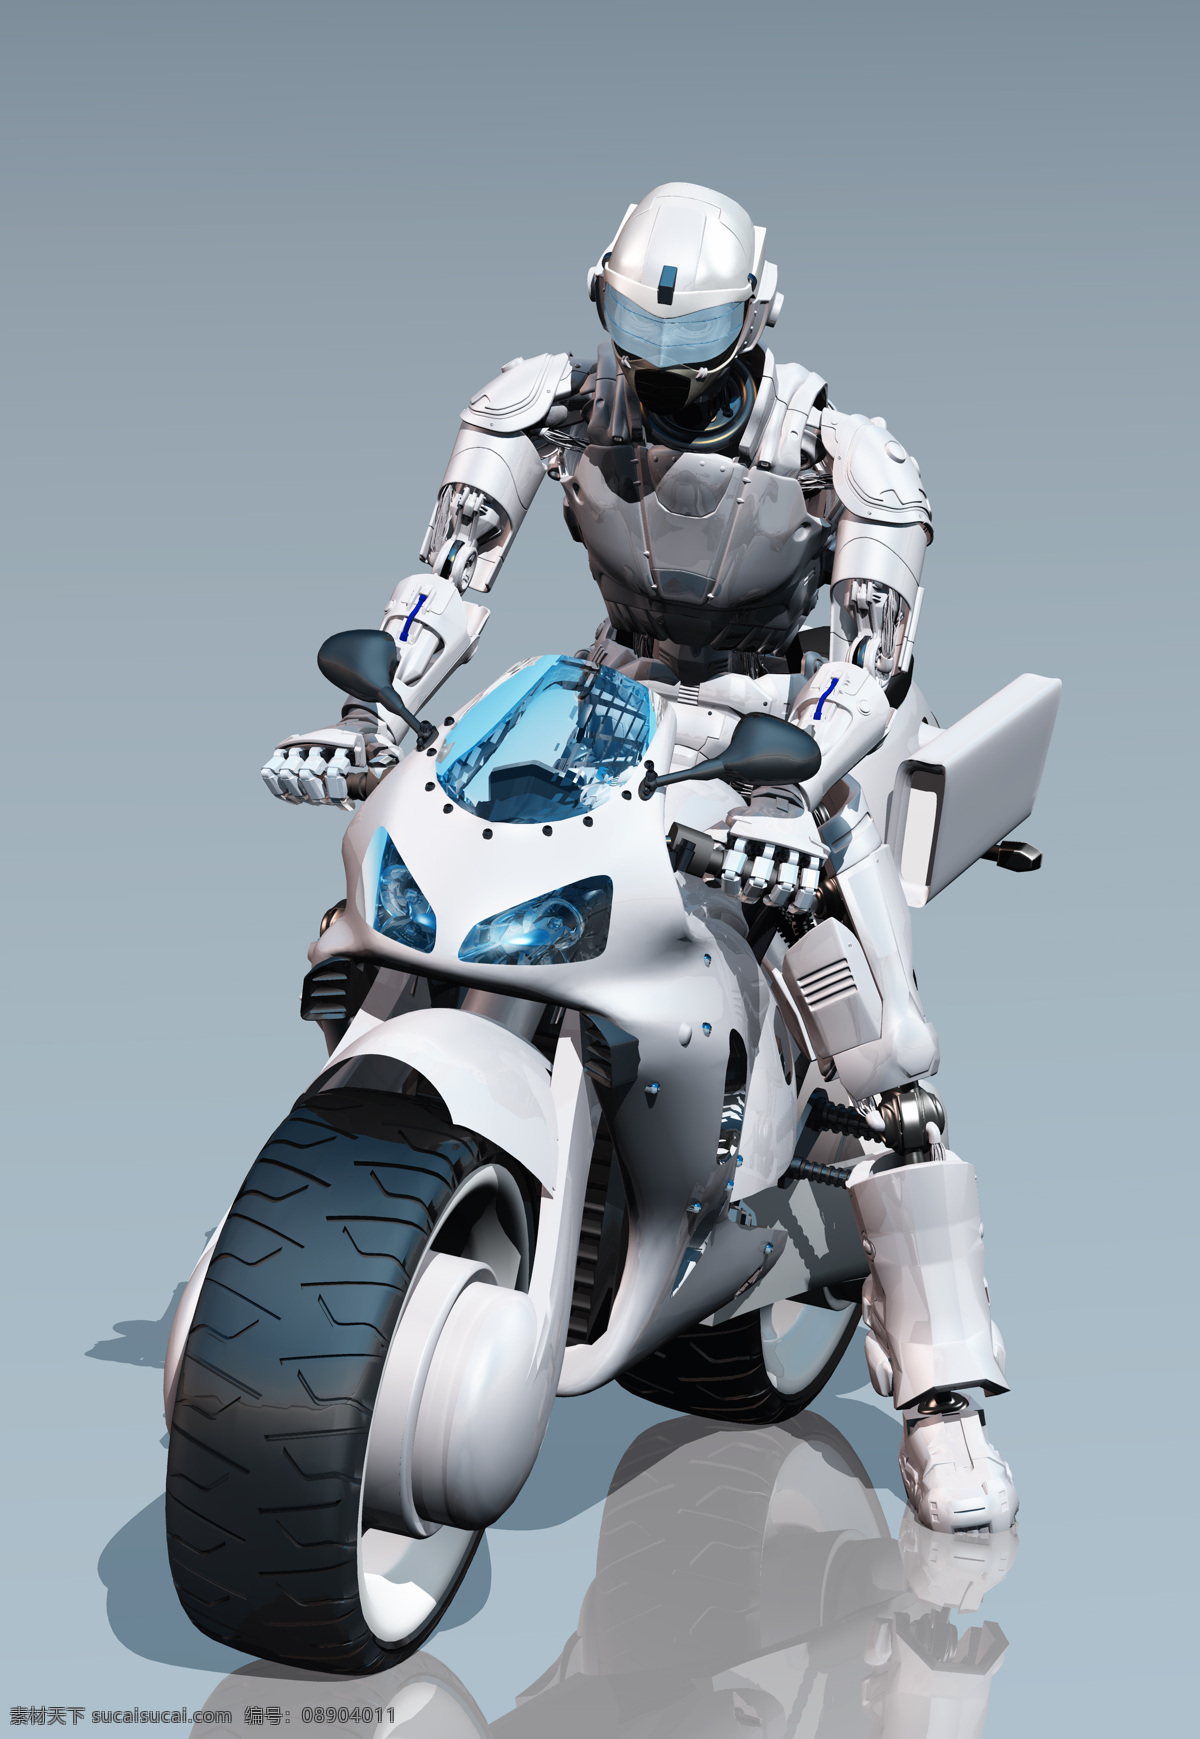 人工智能 机器人 科幻大片 3d渲染 智能 高科技科 科技人物 科幻机器人 现代机器人 超高清 分享素材 3d设计 3d作品